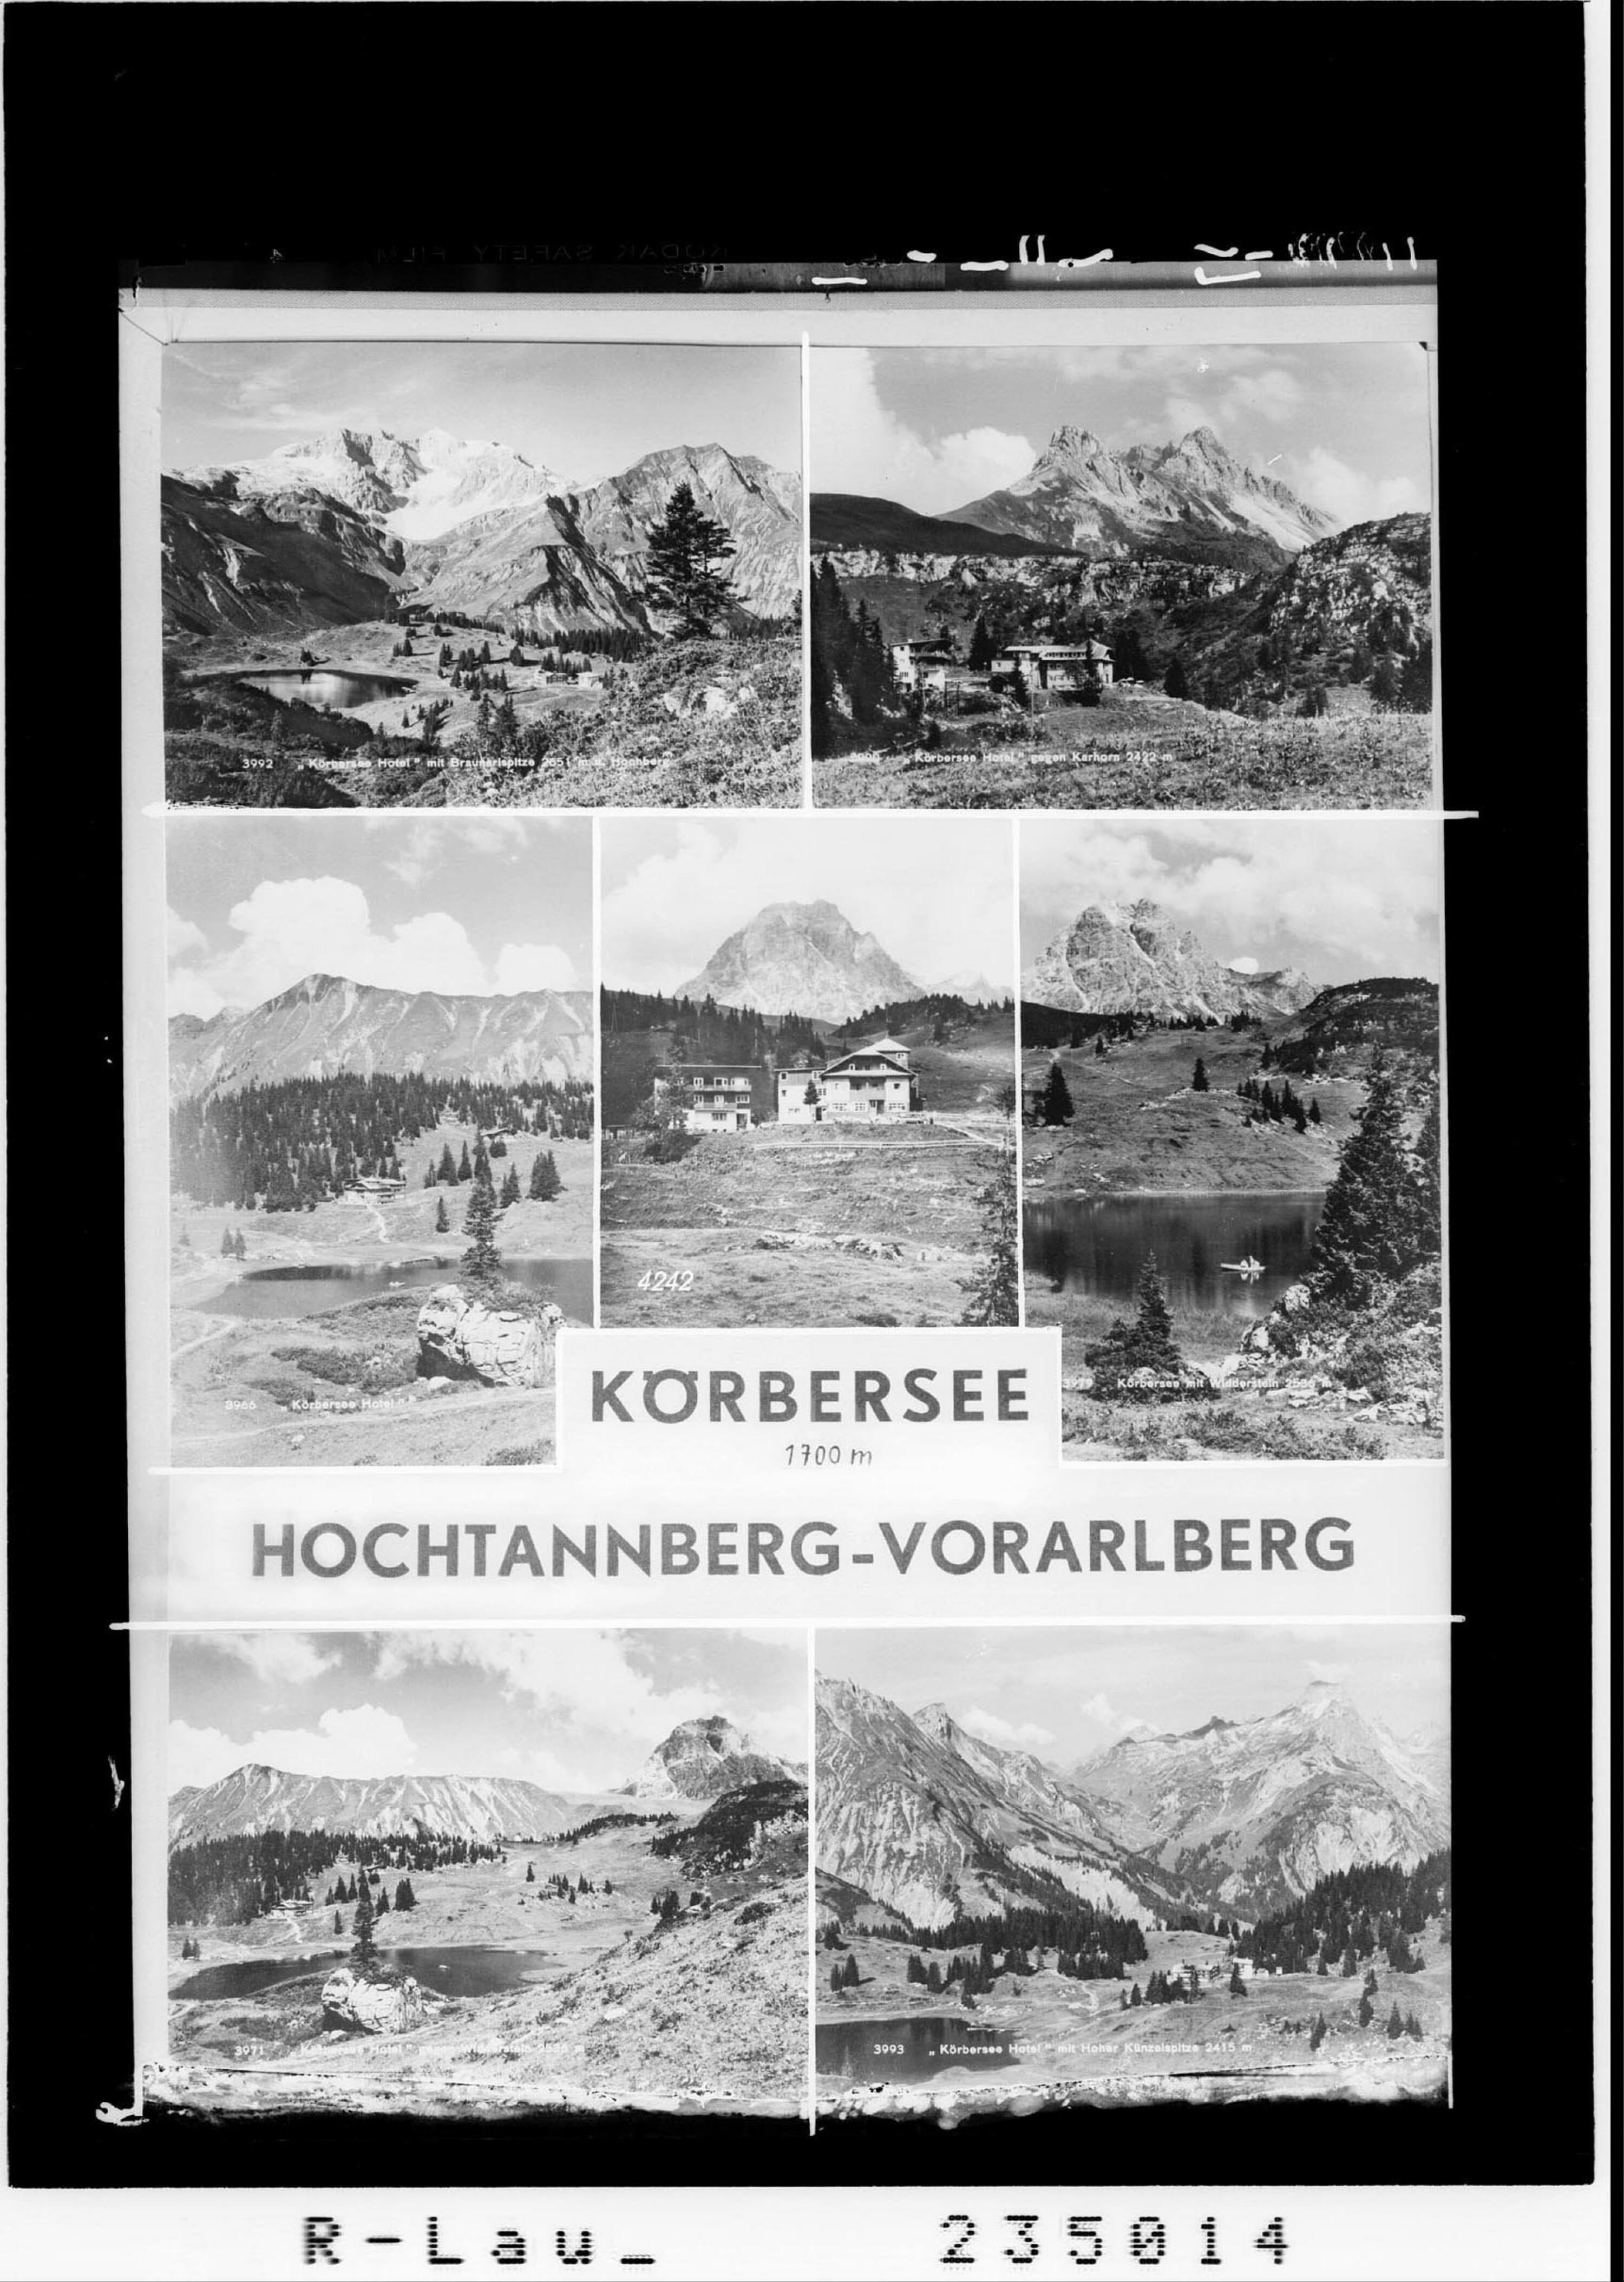 Körbersee 1700 m / Hochtannberg - Vorarlberg></div>


    <hr>
    <div class=